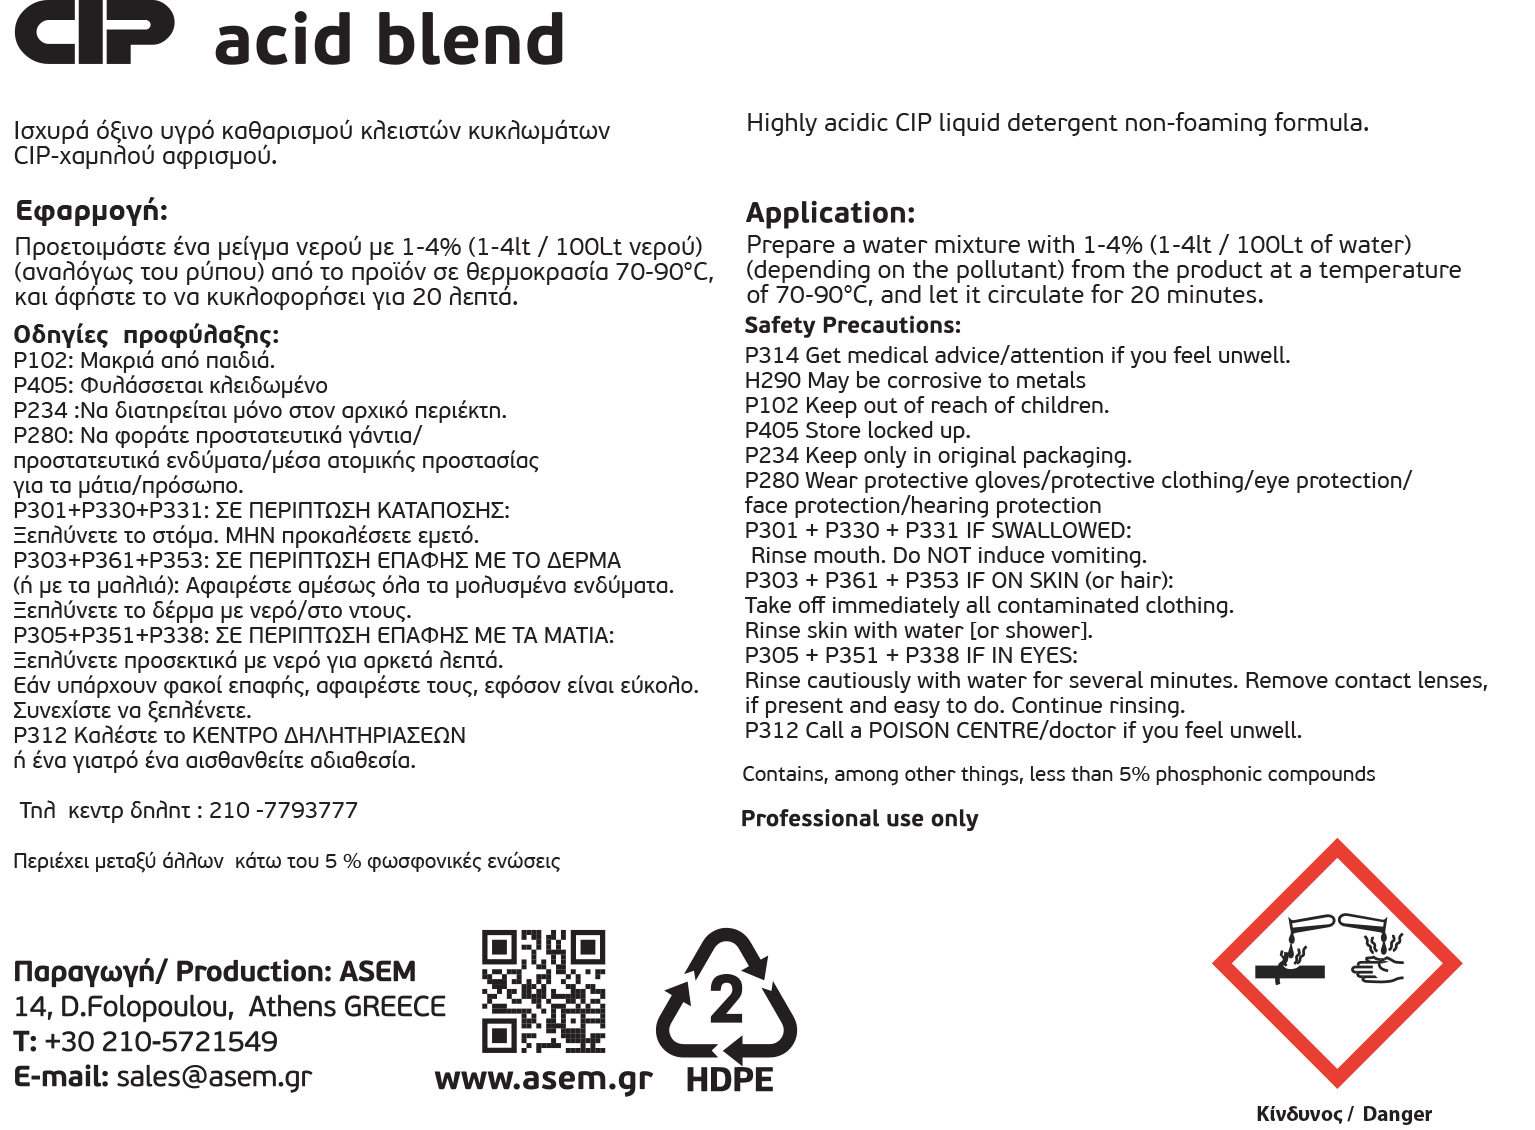 CIP Acid Blend (134 X 100)